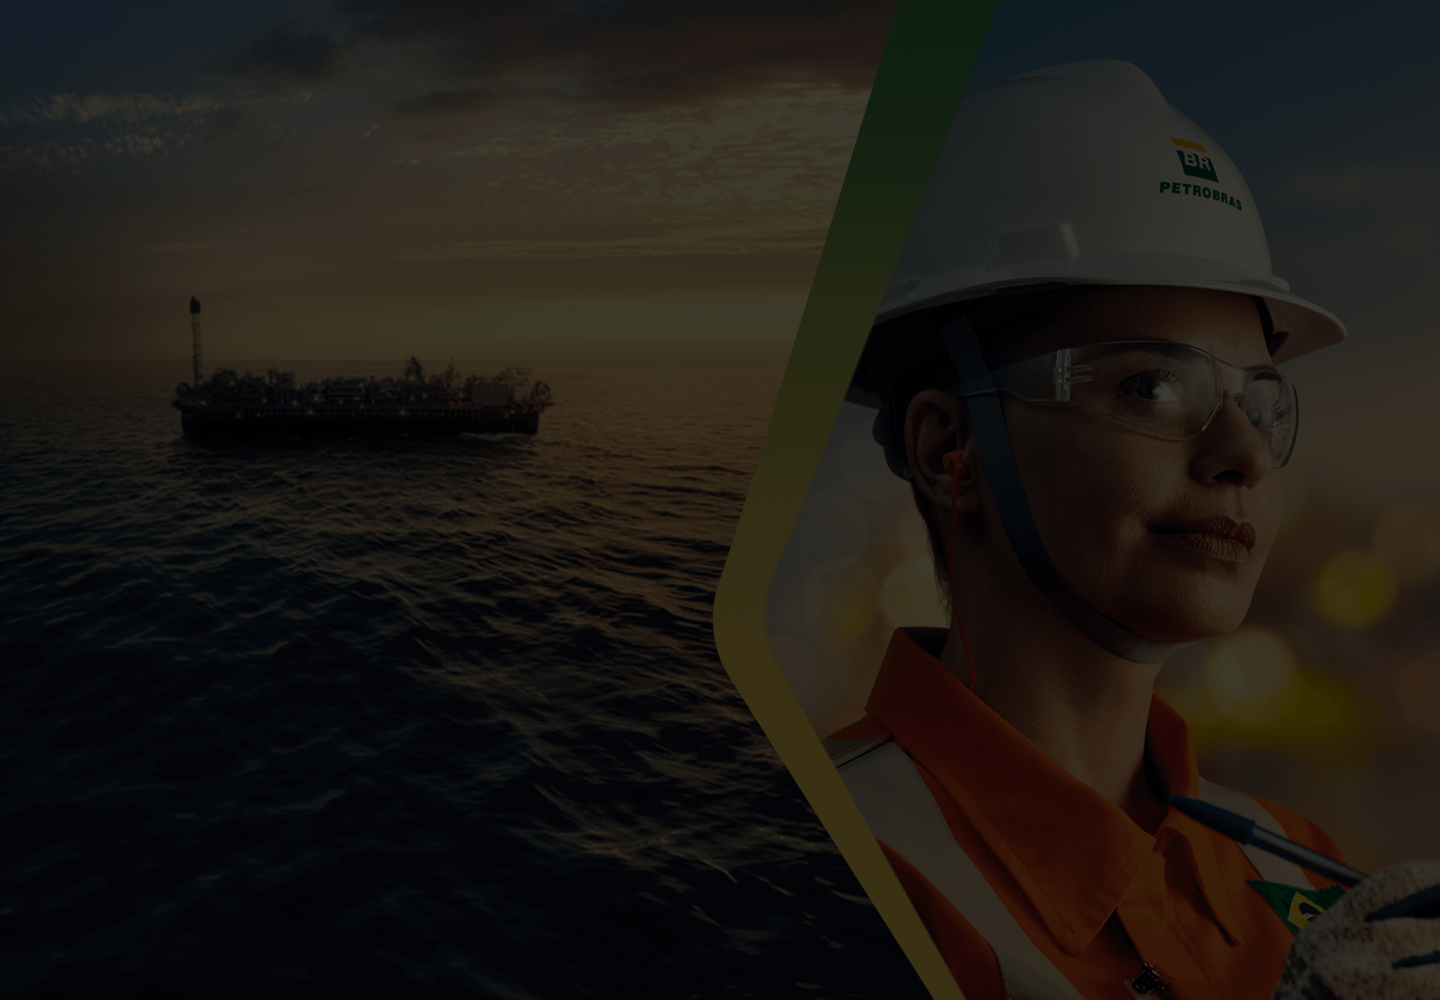 Duas imagens diferentes unidas. À esquerda, uma plataforma de petróleo no mar. À direita, uma mulher usando uniforme da Petrobras.